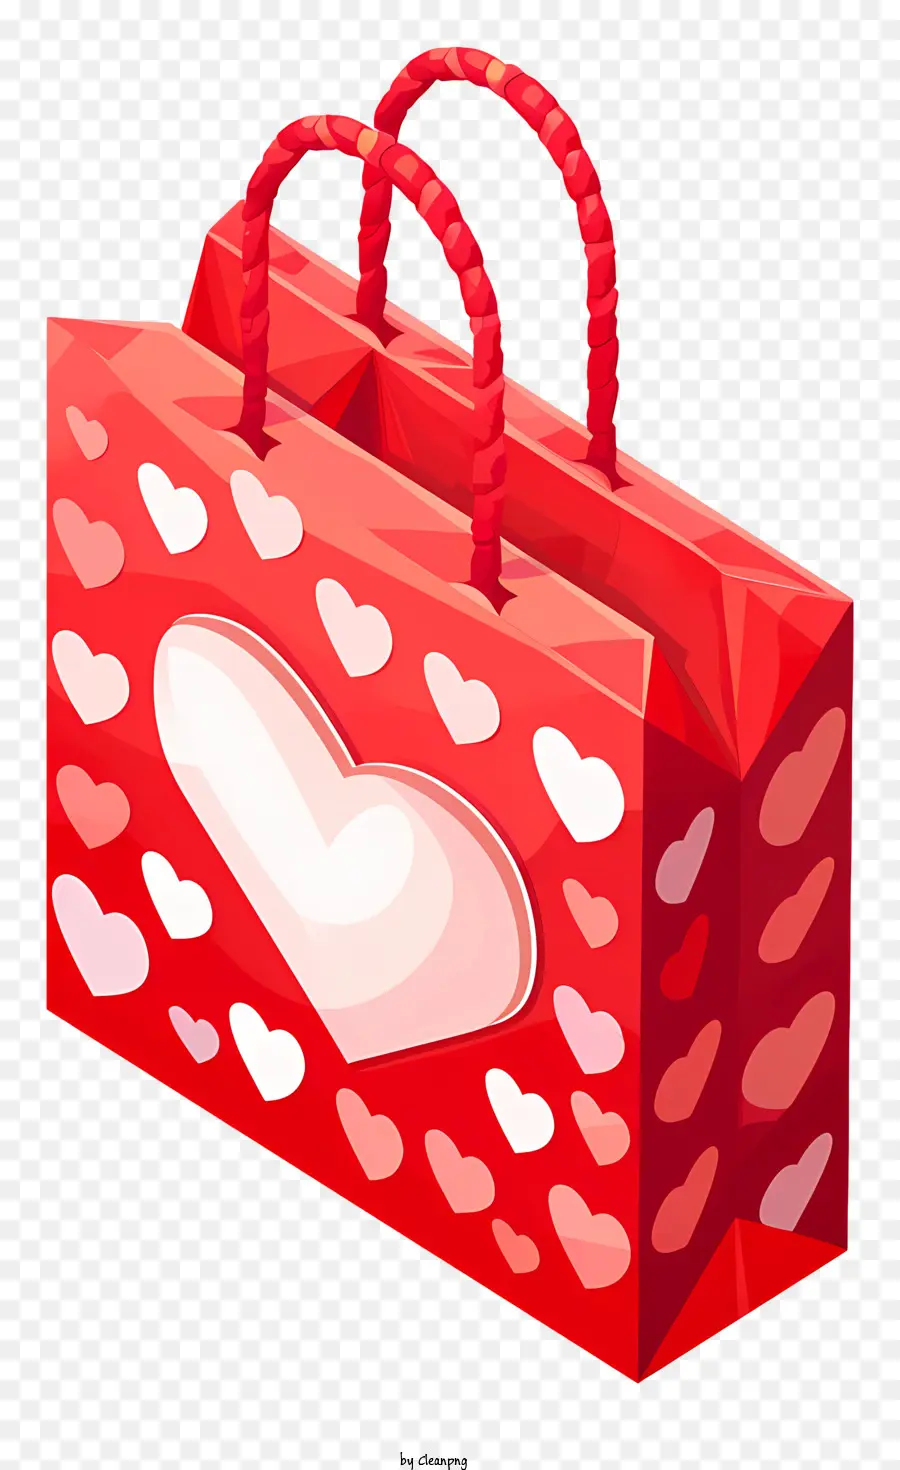 weißen hintergrund - Rote Einkaufstasche mit weißem Herzen Design von Person gehalten